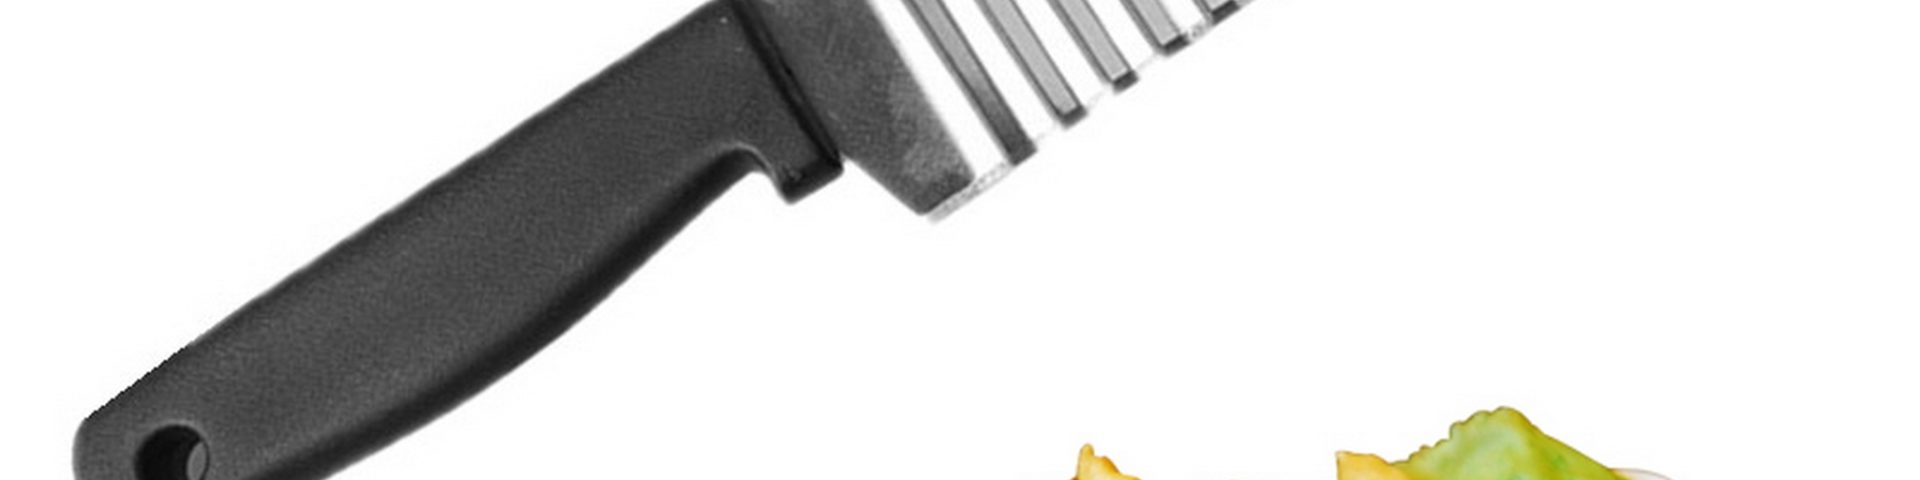 Нож для фигурной нарезки картошки фри